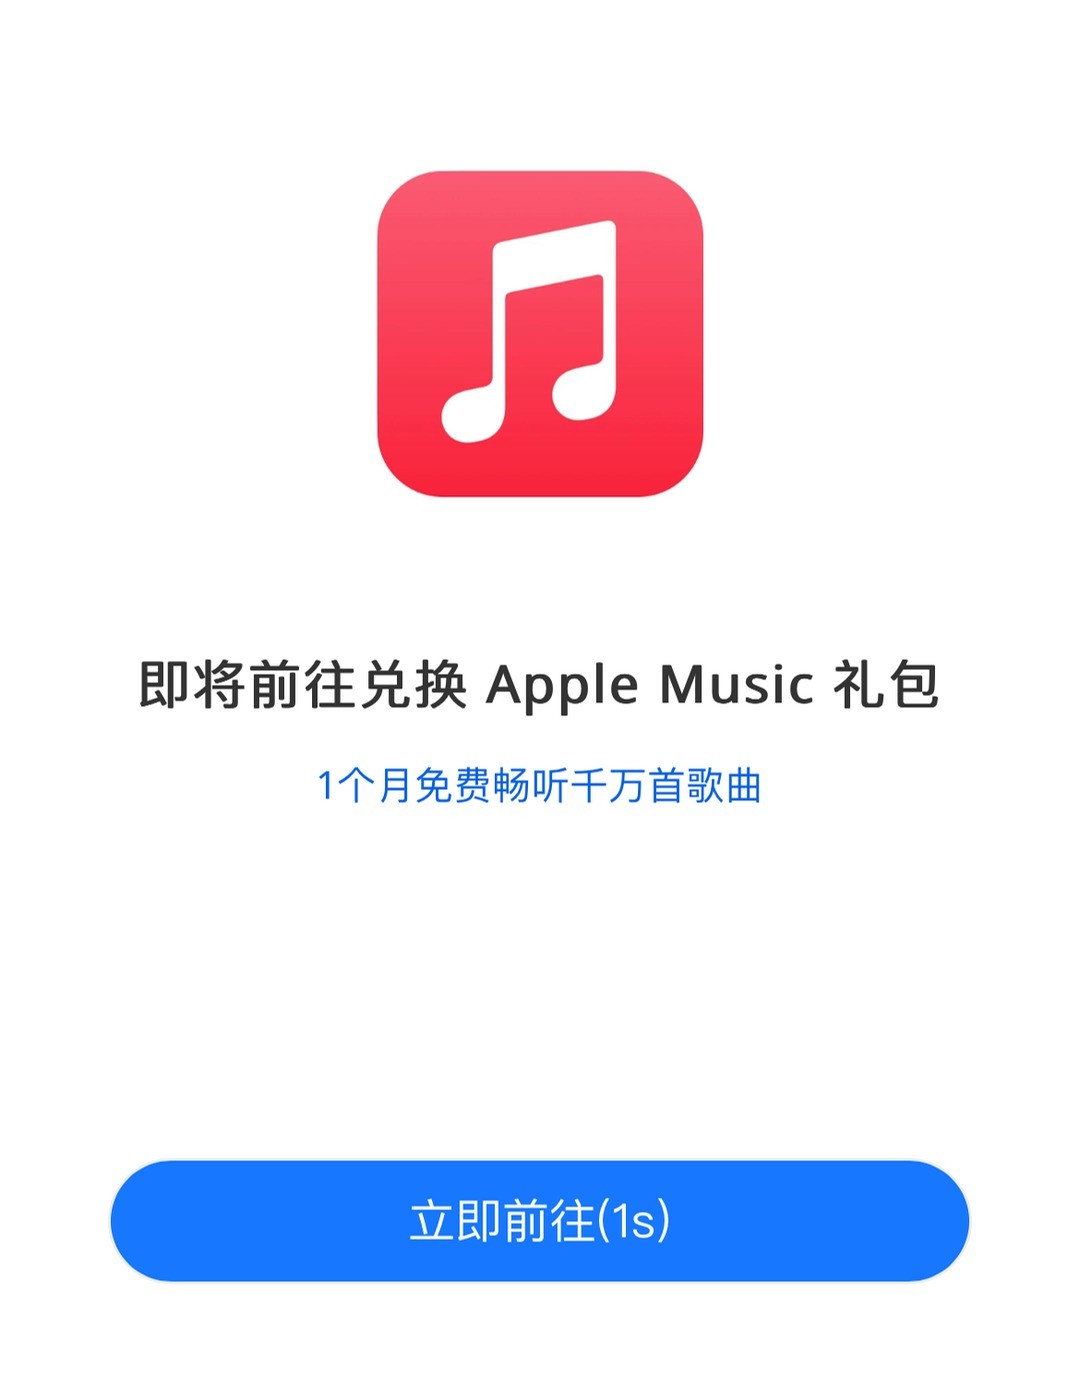 速领！支付宝苹果专区福利，可领 Apple Music 免费订阅一个月